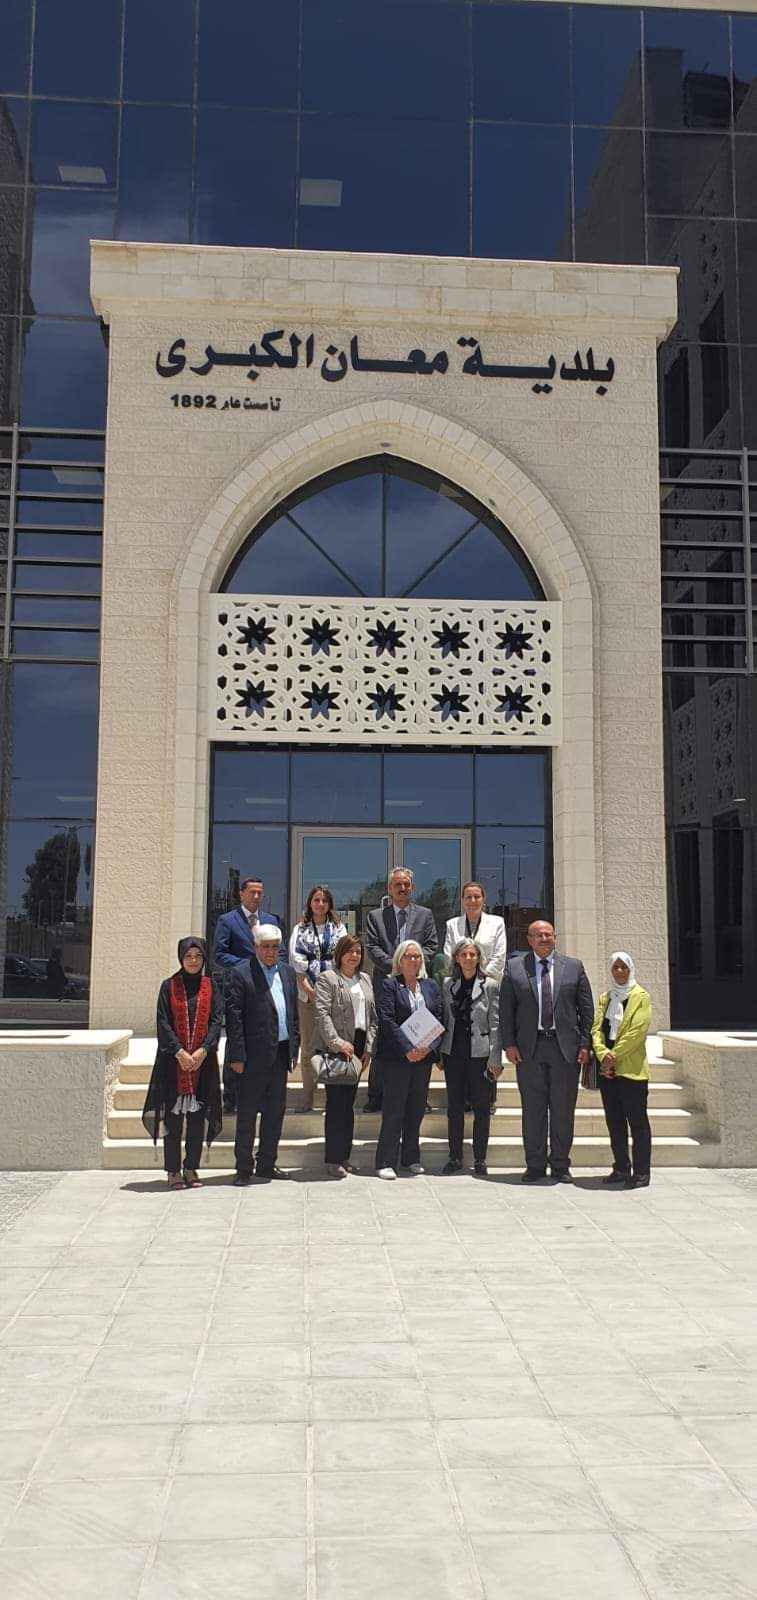 استقبال رئيس بلدية معان الكبرى الدكتور ياسين صلاح في دار البلدية ليزلي ريد مديرة الوكالة الأمريكية للتنمية الدولية في الأردن(USAID) 